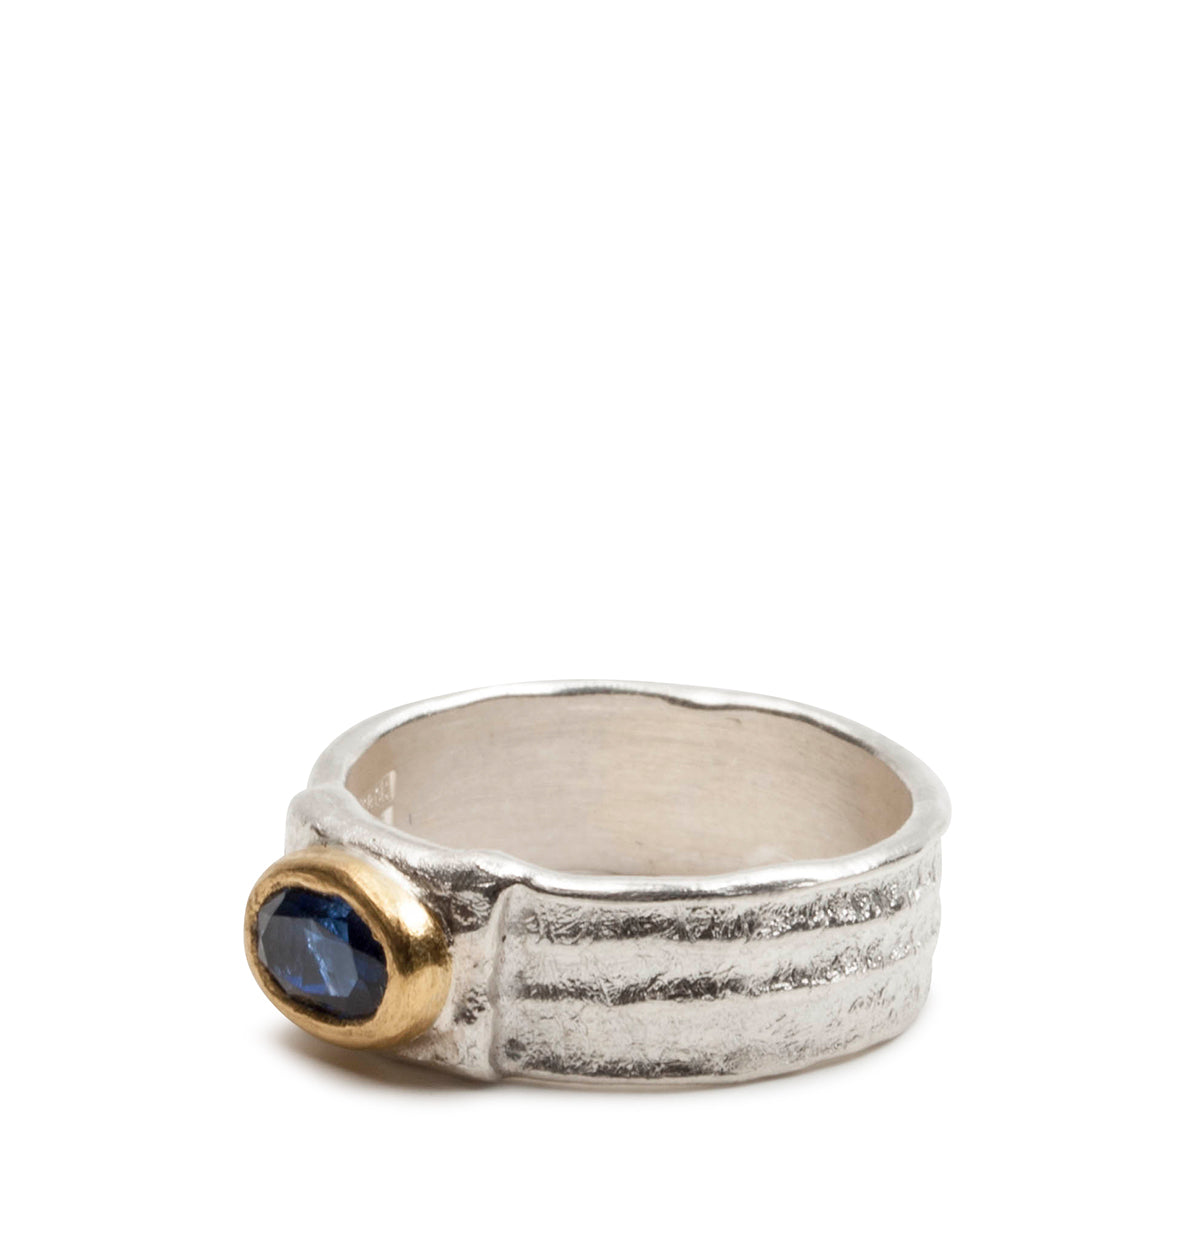 Bicolor 925 Silberring mit blauem Saphir im Oval-Schliff